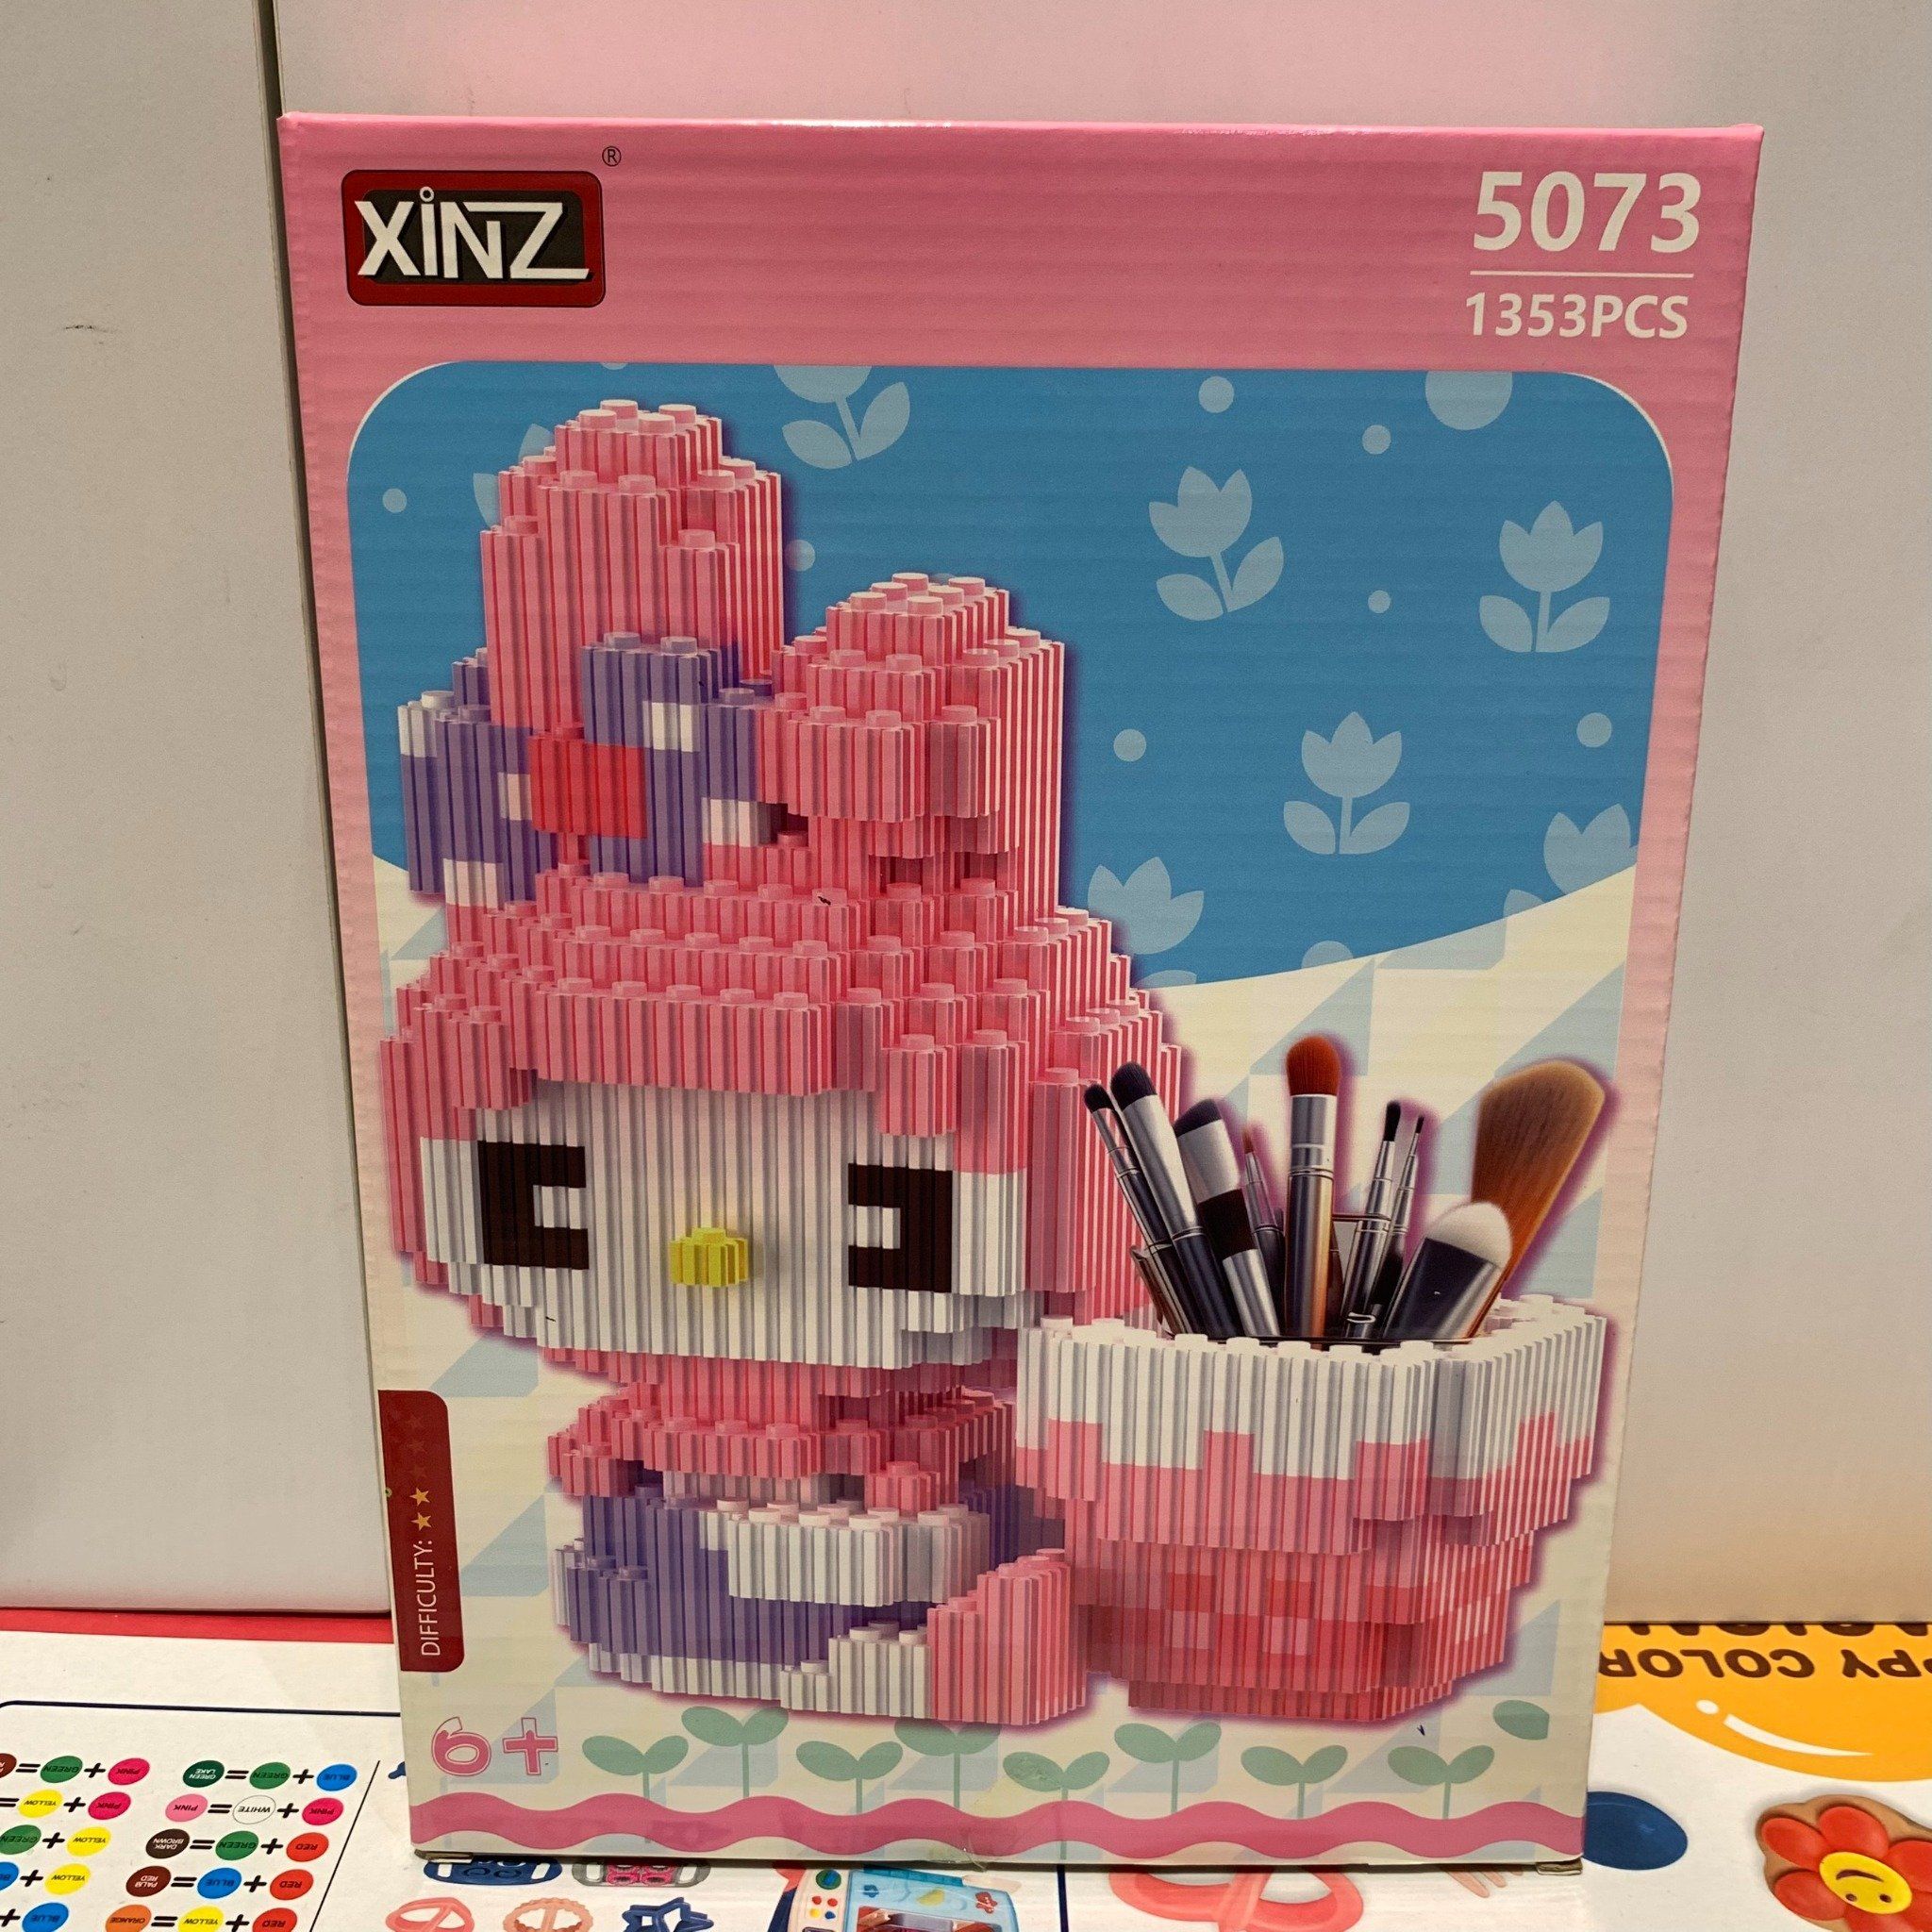  Đồ chơi lắp ghép XINZ: bộ xếp khối hộp bút Kuromi & Melody, LiLo&Stitch, Garfield, 1259pcs, +6ages, No. 5072,3,4,5 